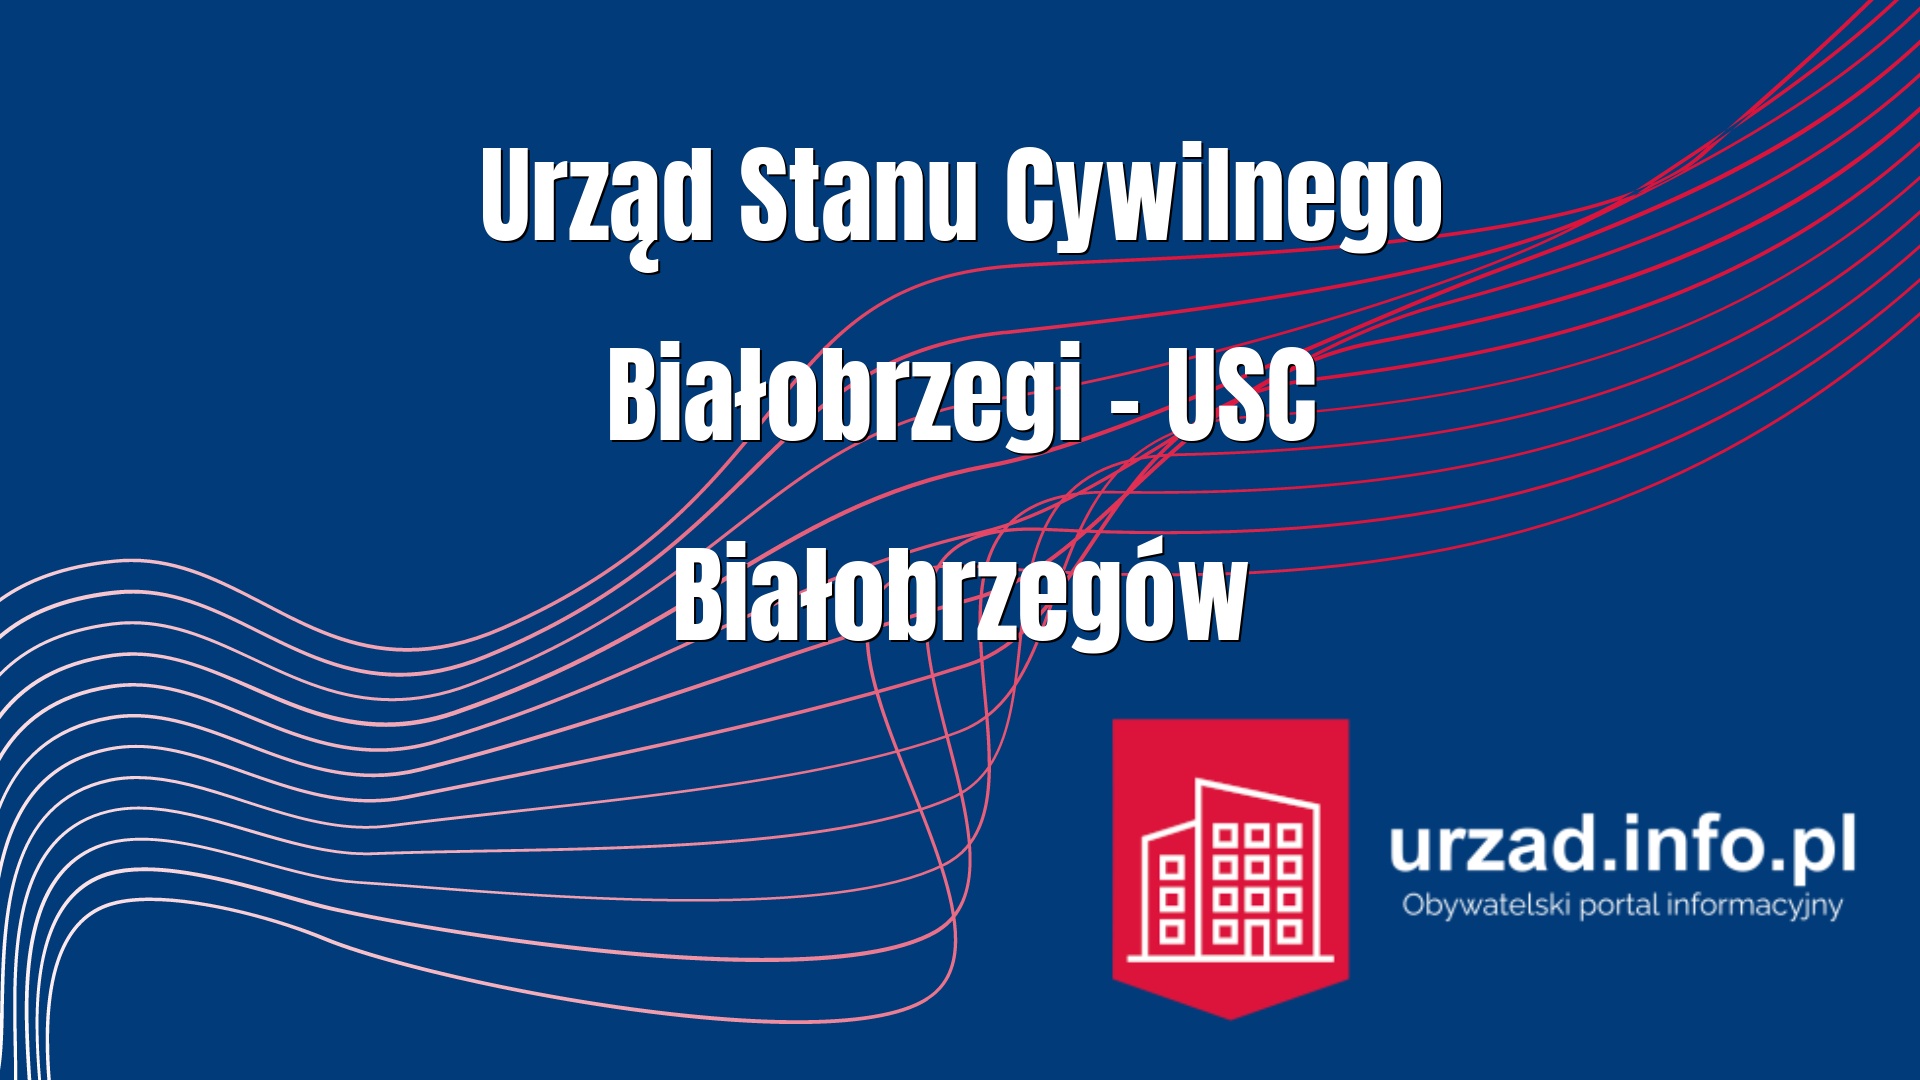 Urząd Stanu Cywilnego Białobrzegi – USC Białobrzegów